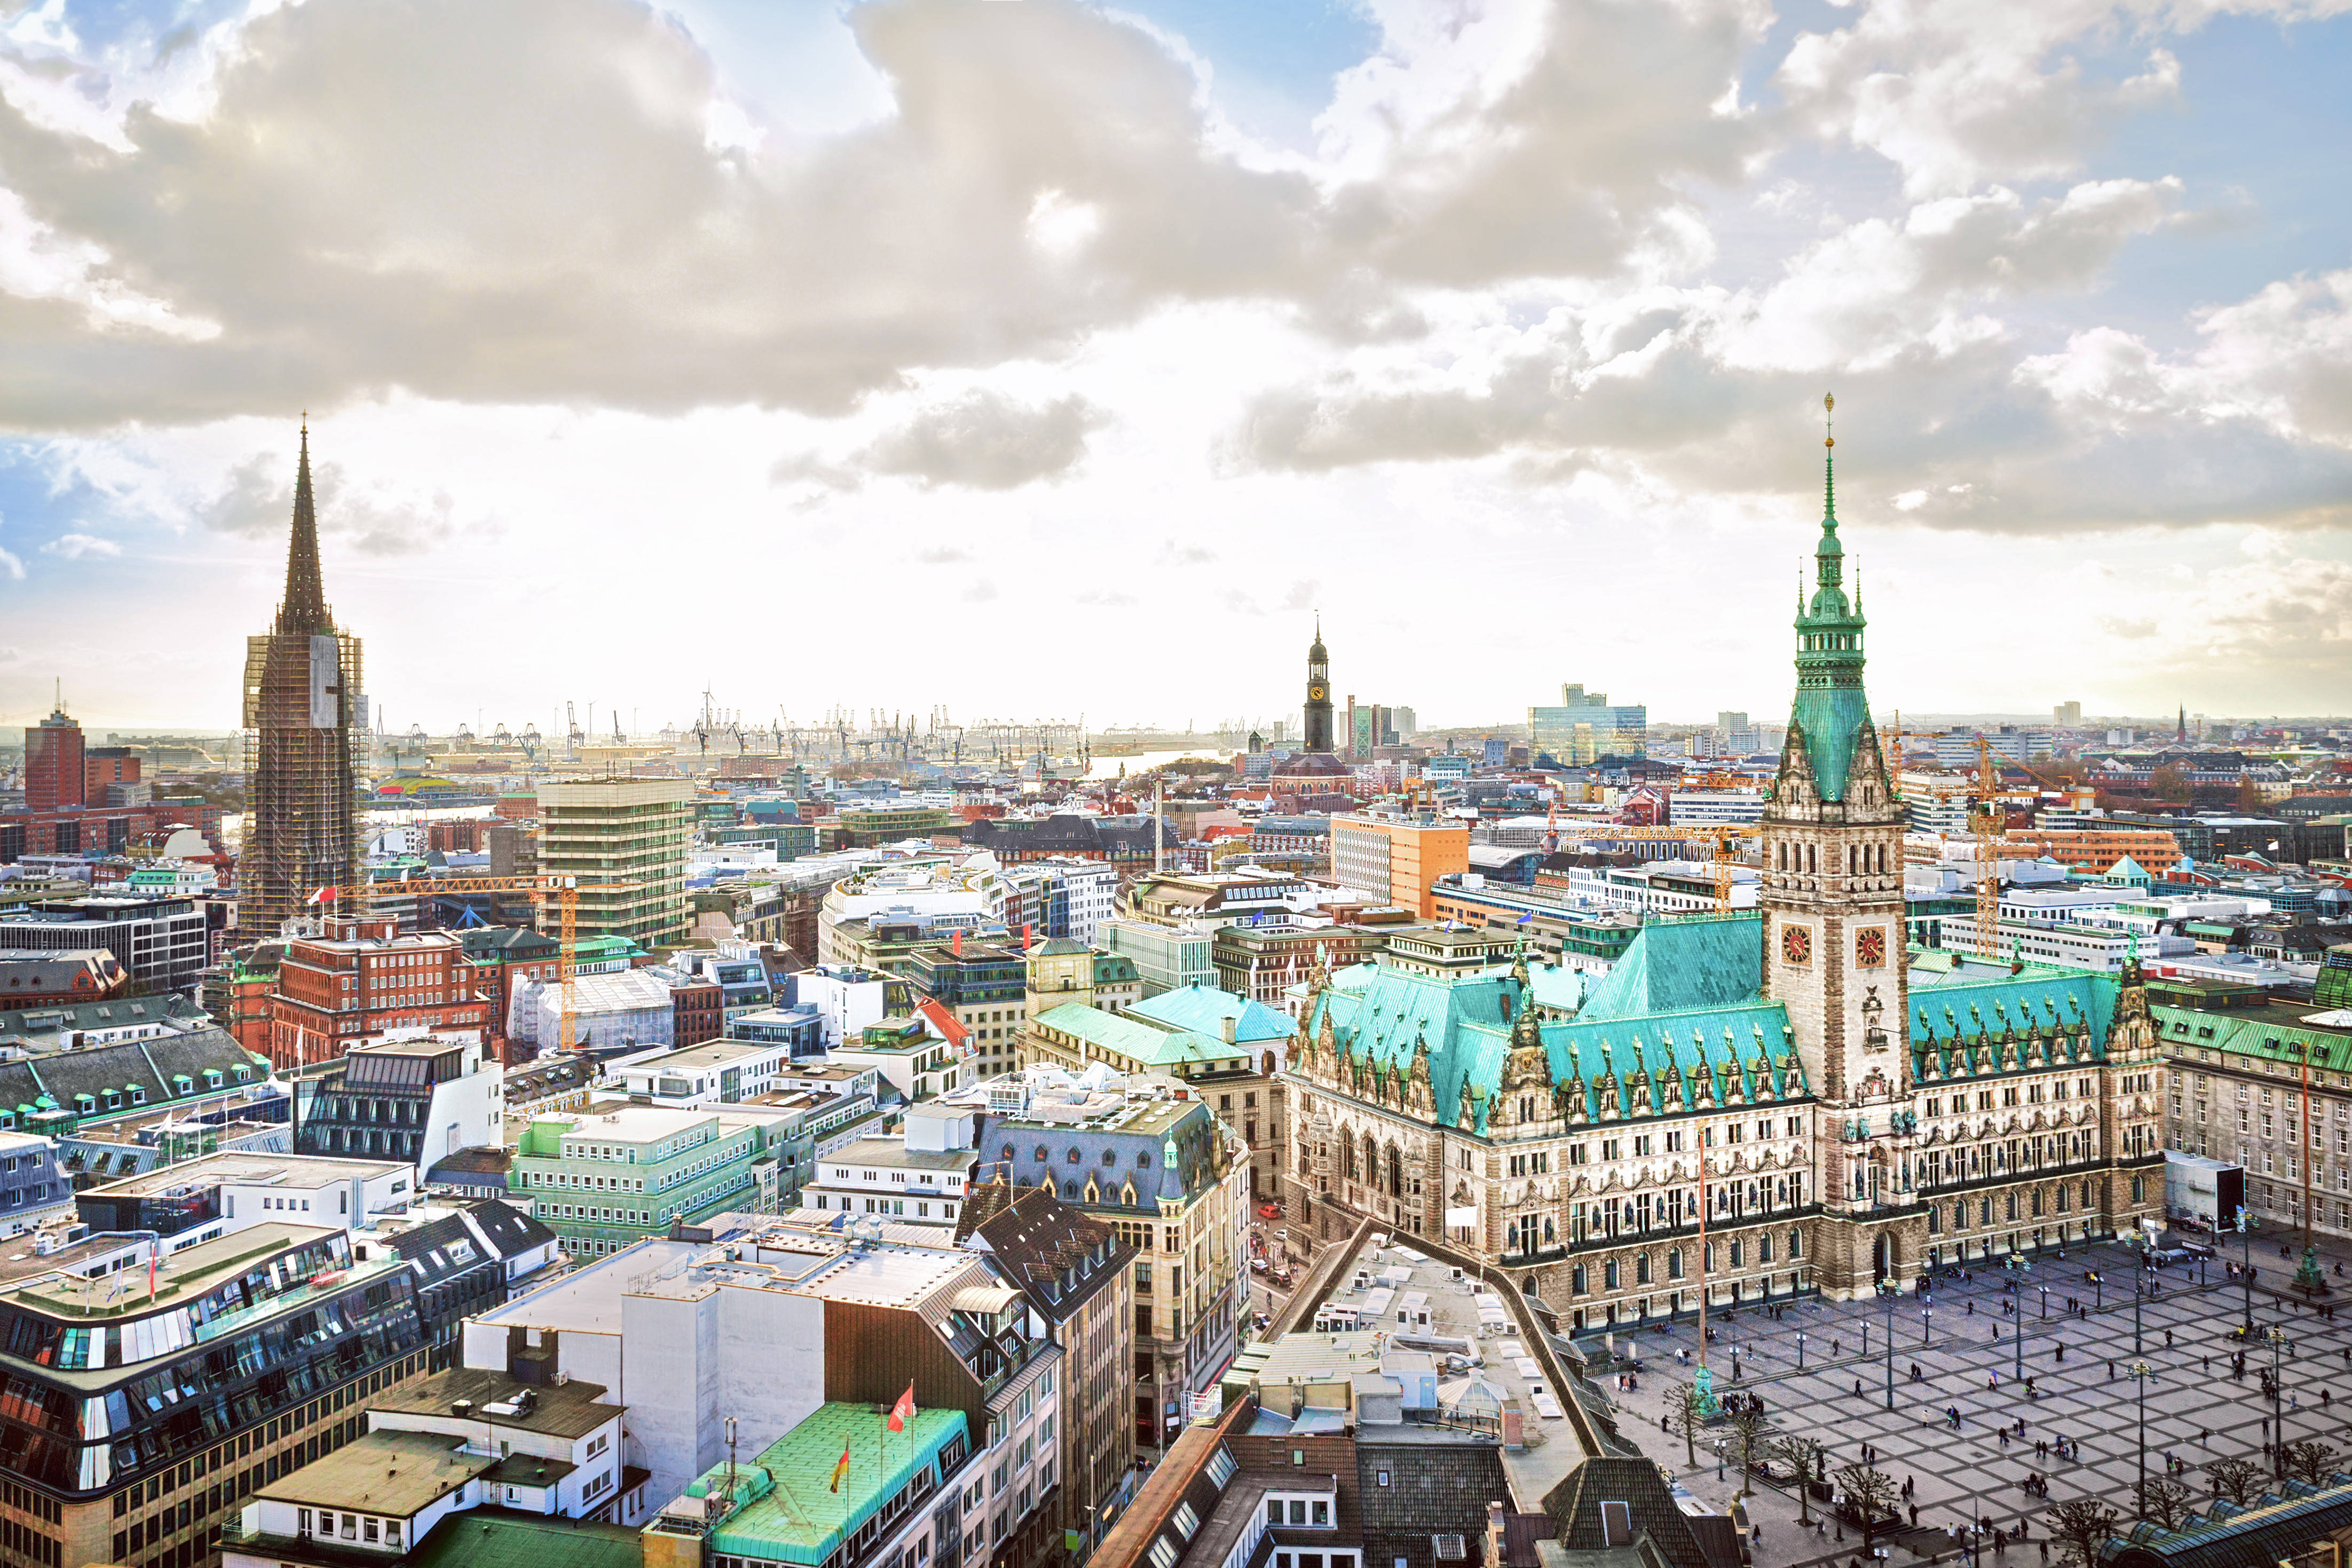 Гамбург, город в Германии, куда иностранцам можно переехать по репатриации